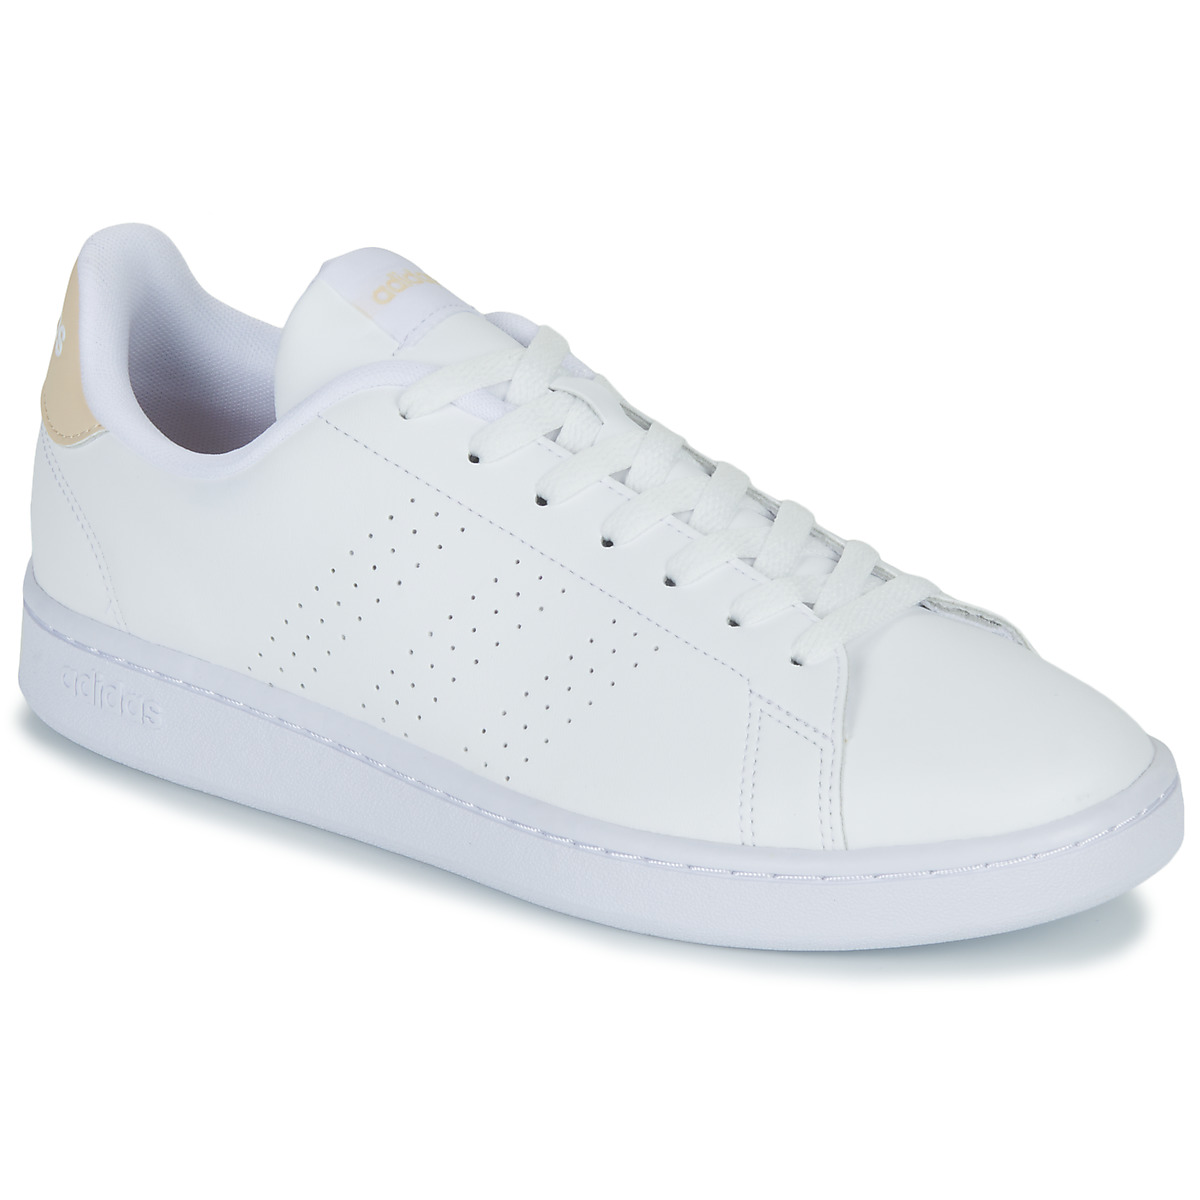 鞋子 球鞋基本款 Adidas Sportswear ADVANTAGE 白色 / 米色